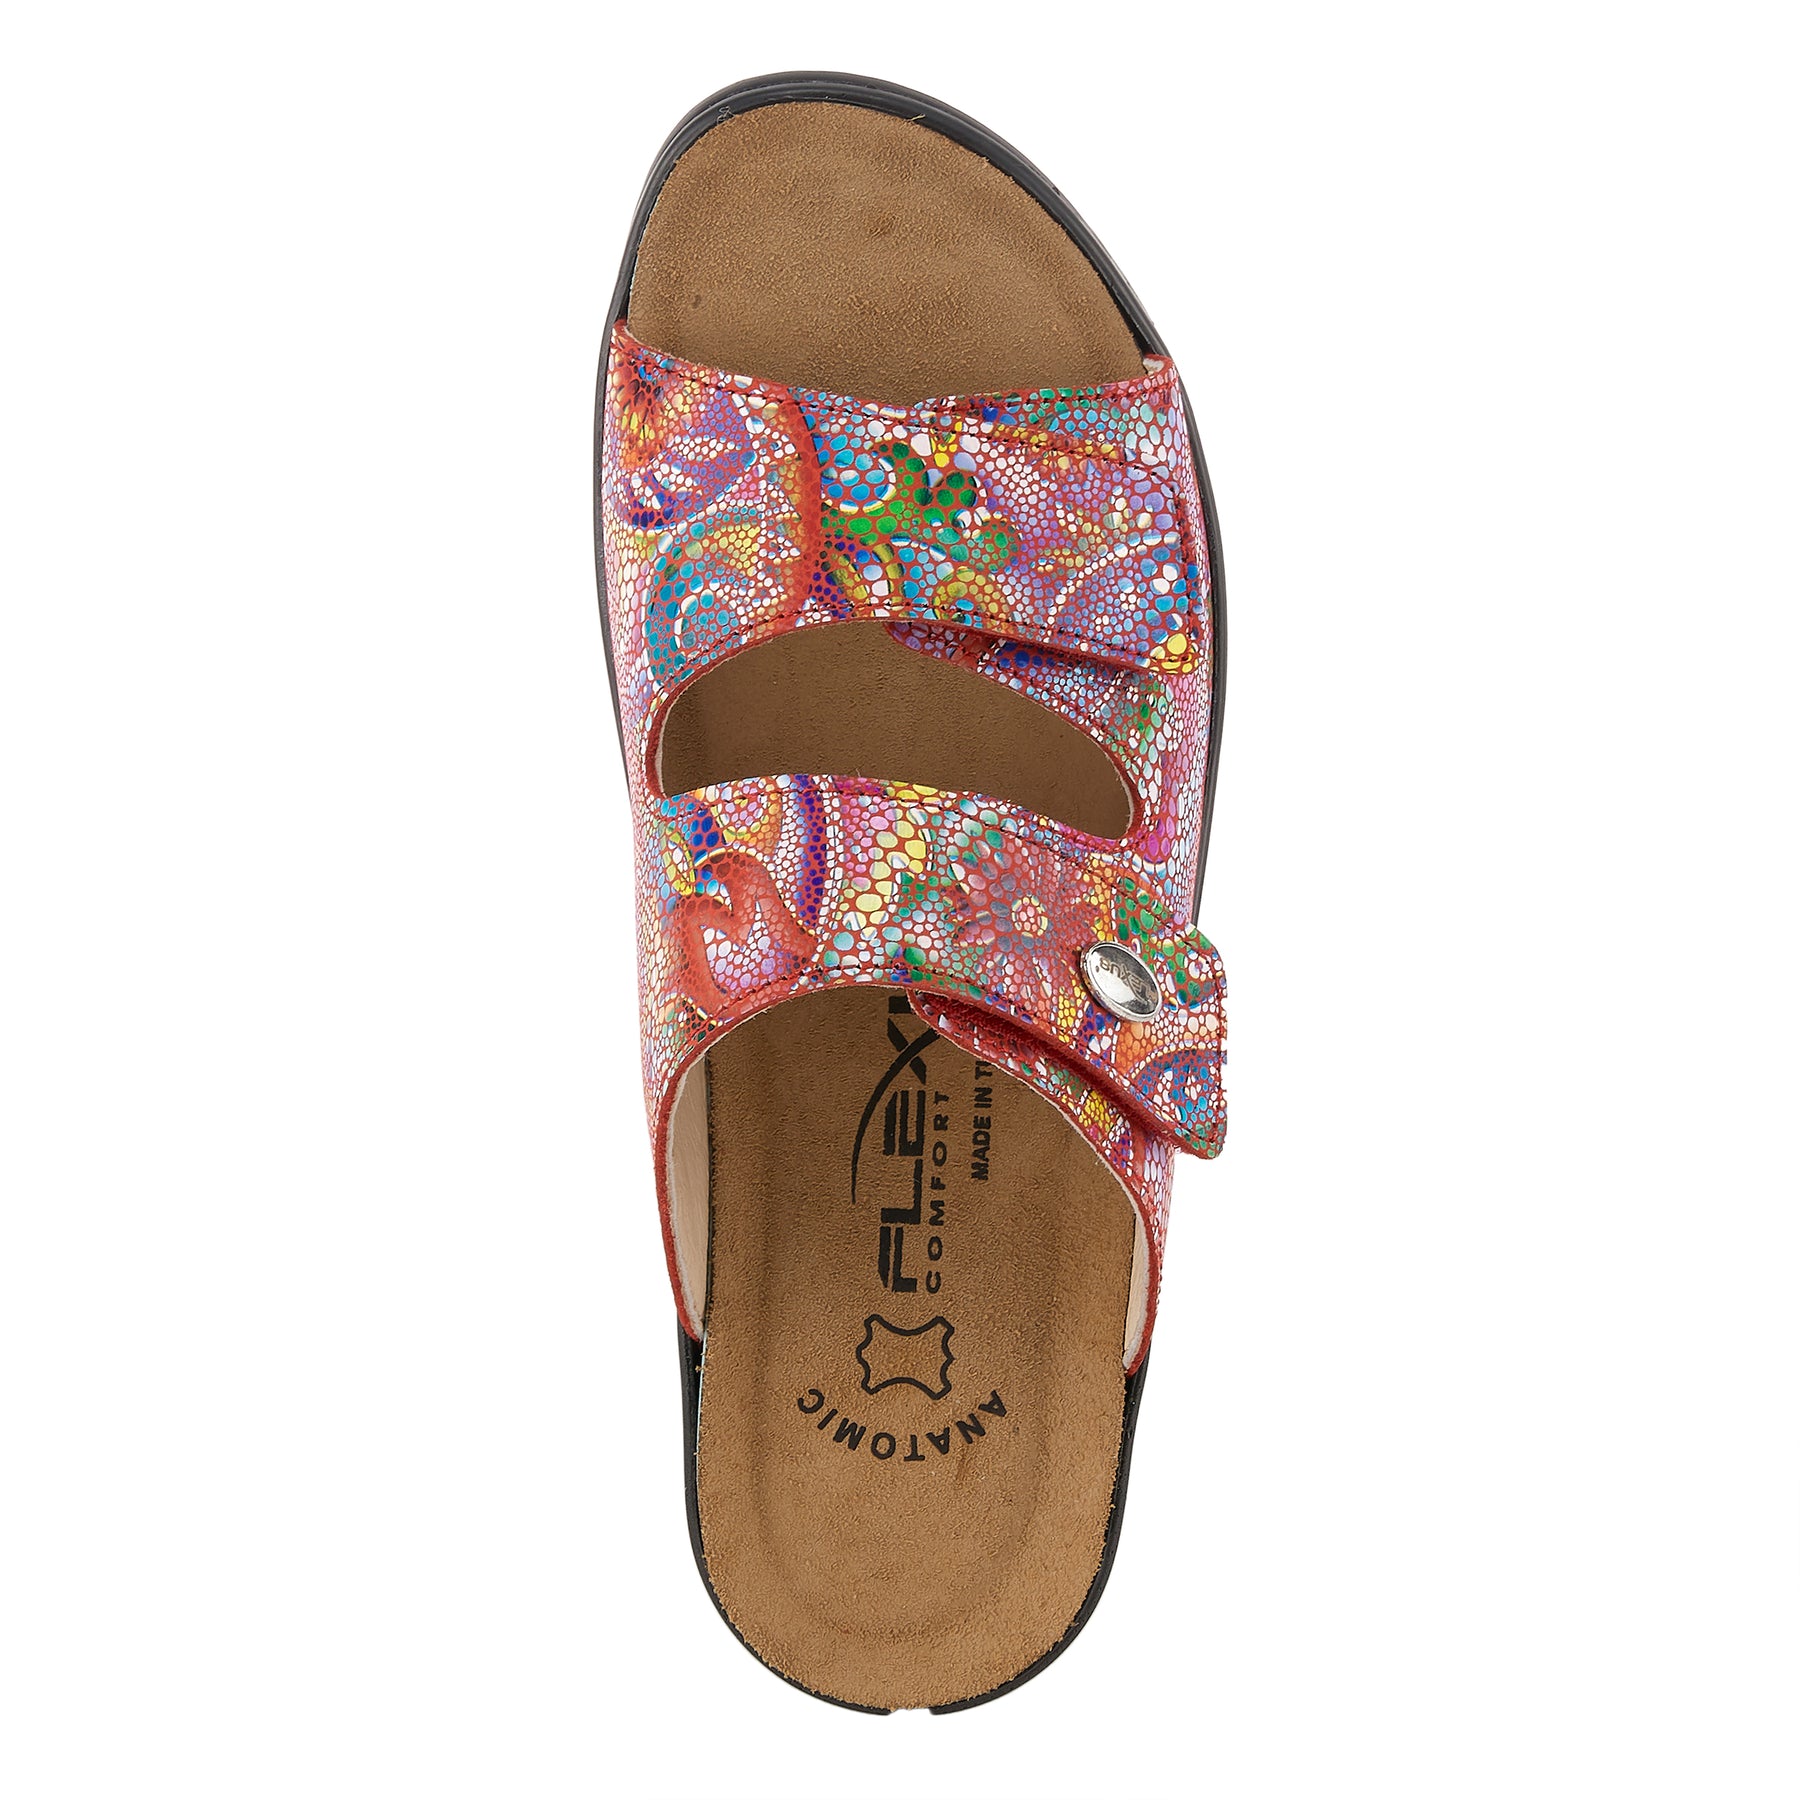 Flexus Bellasa Slide Sandal: Leather Sandals– Spring Step Shoes